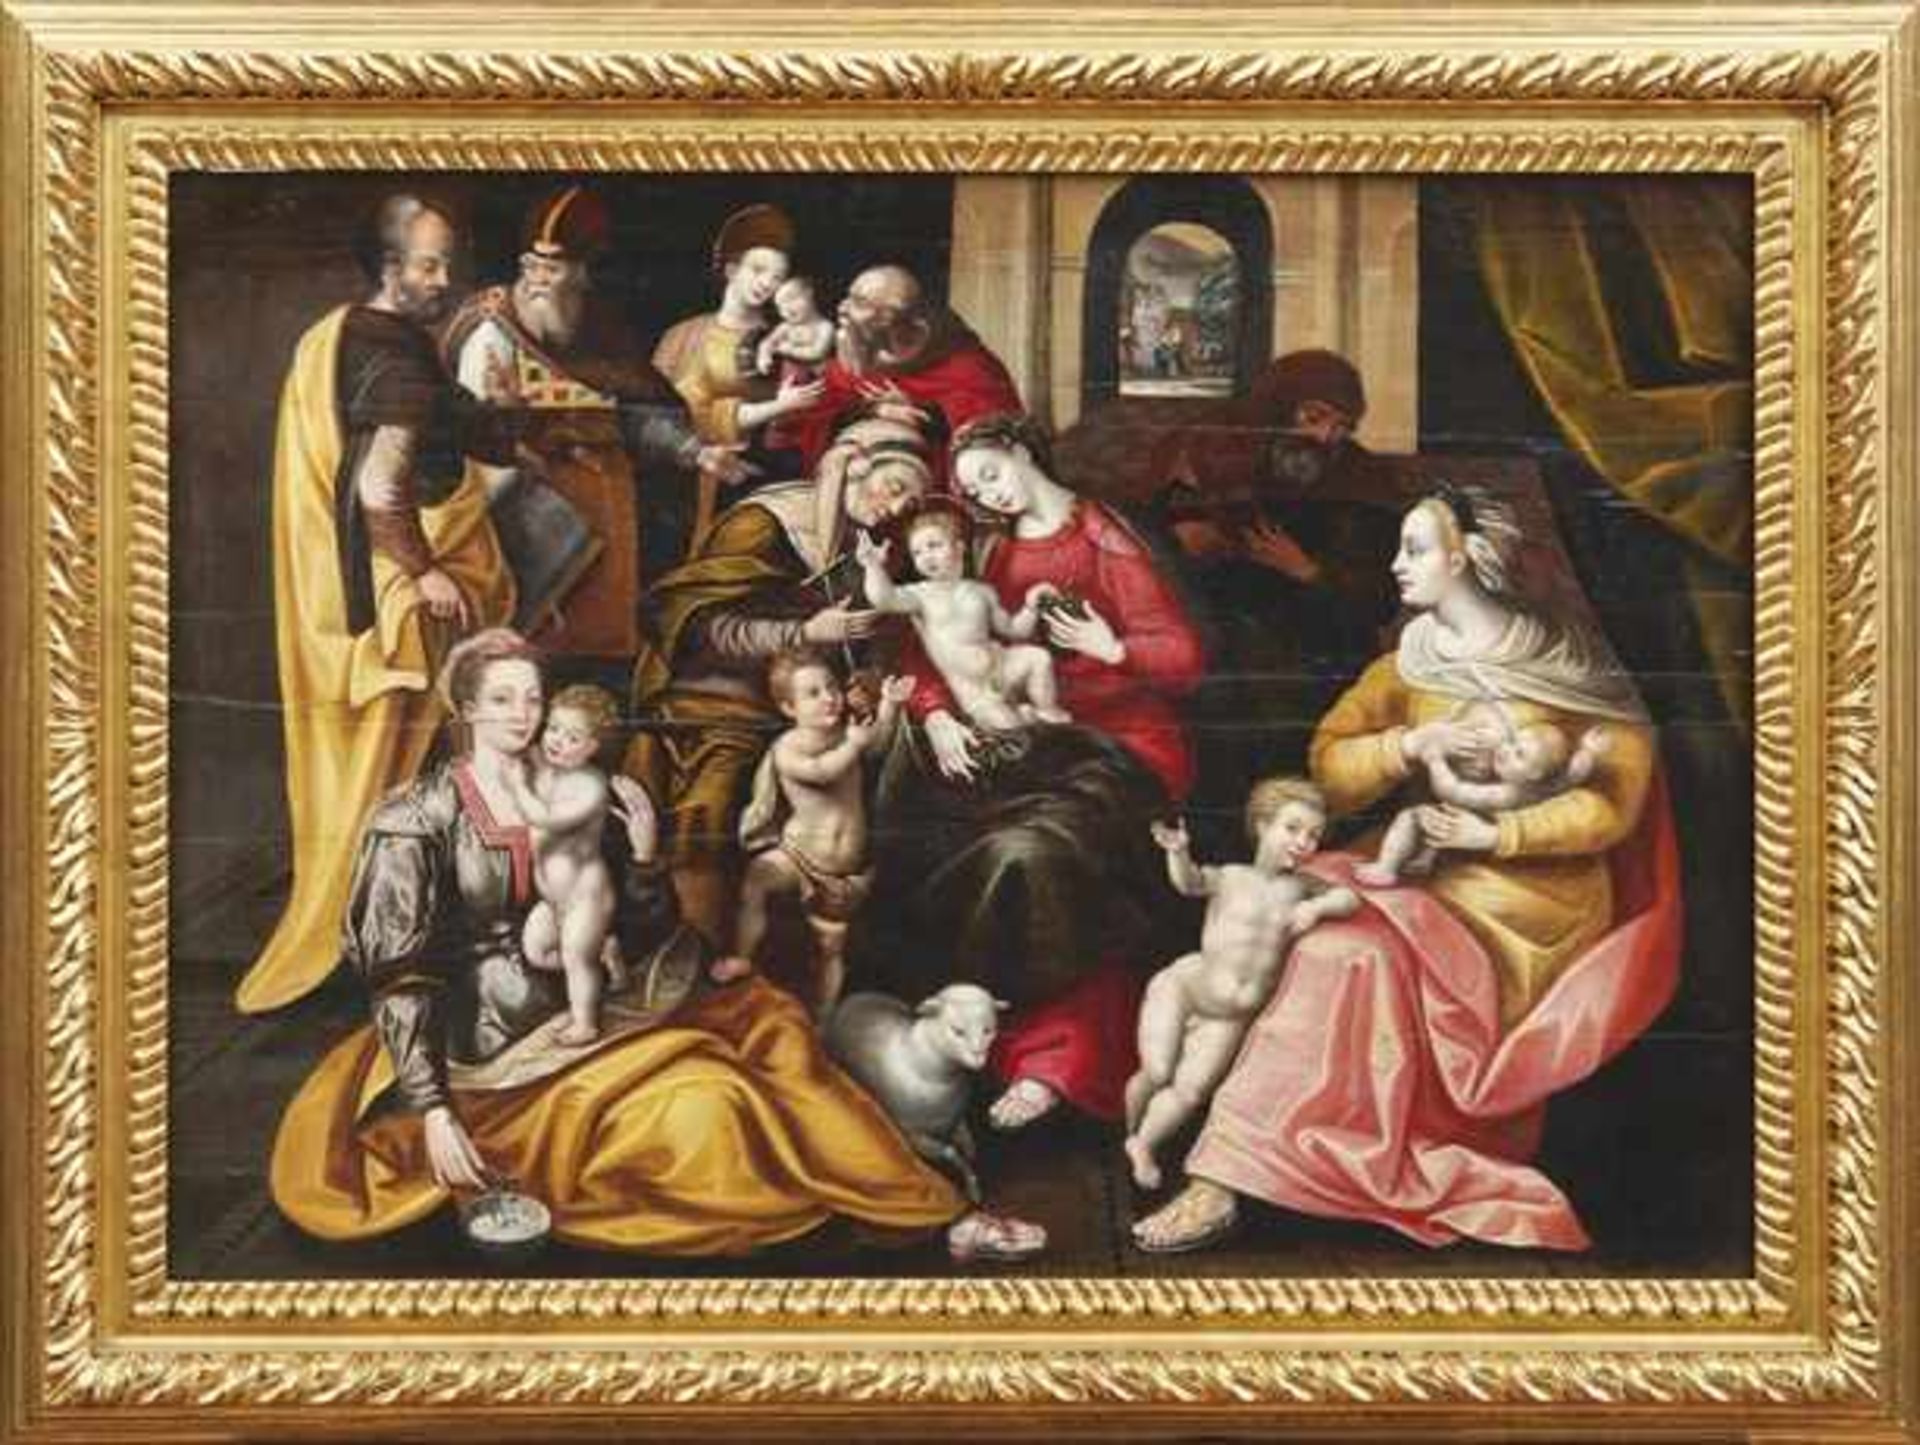 Vos, Marten de - Nachfolger Die Heilige Sippe (Antwerpen 1532-1603 ebd.) Dargestellt ist die Familie